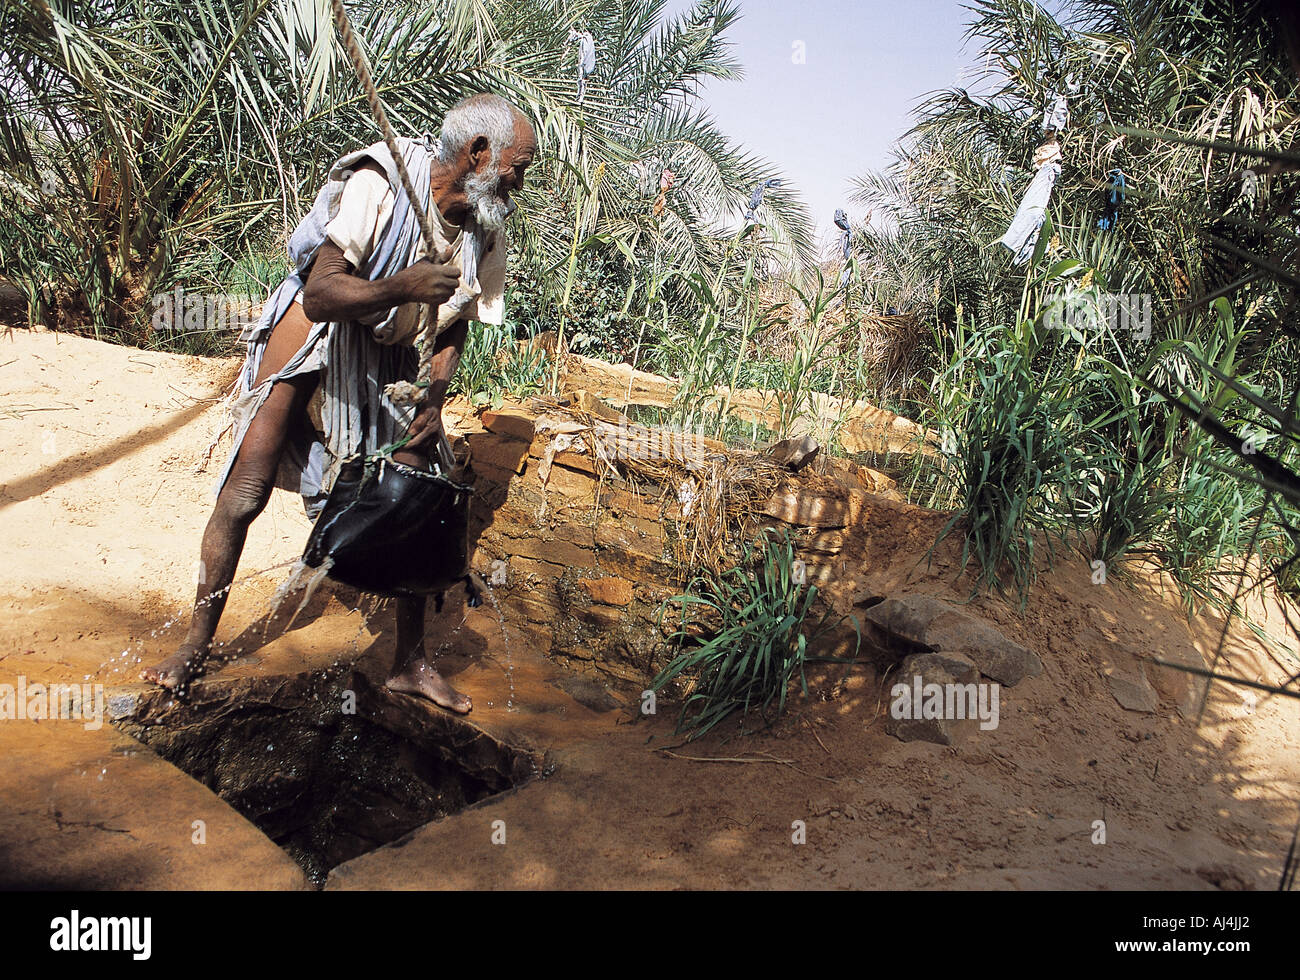 Oasis dans l'Adrar en agriculture limitée permet de plateau désertique, la Mauritanie. Banque D'Images